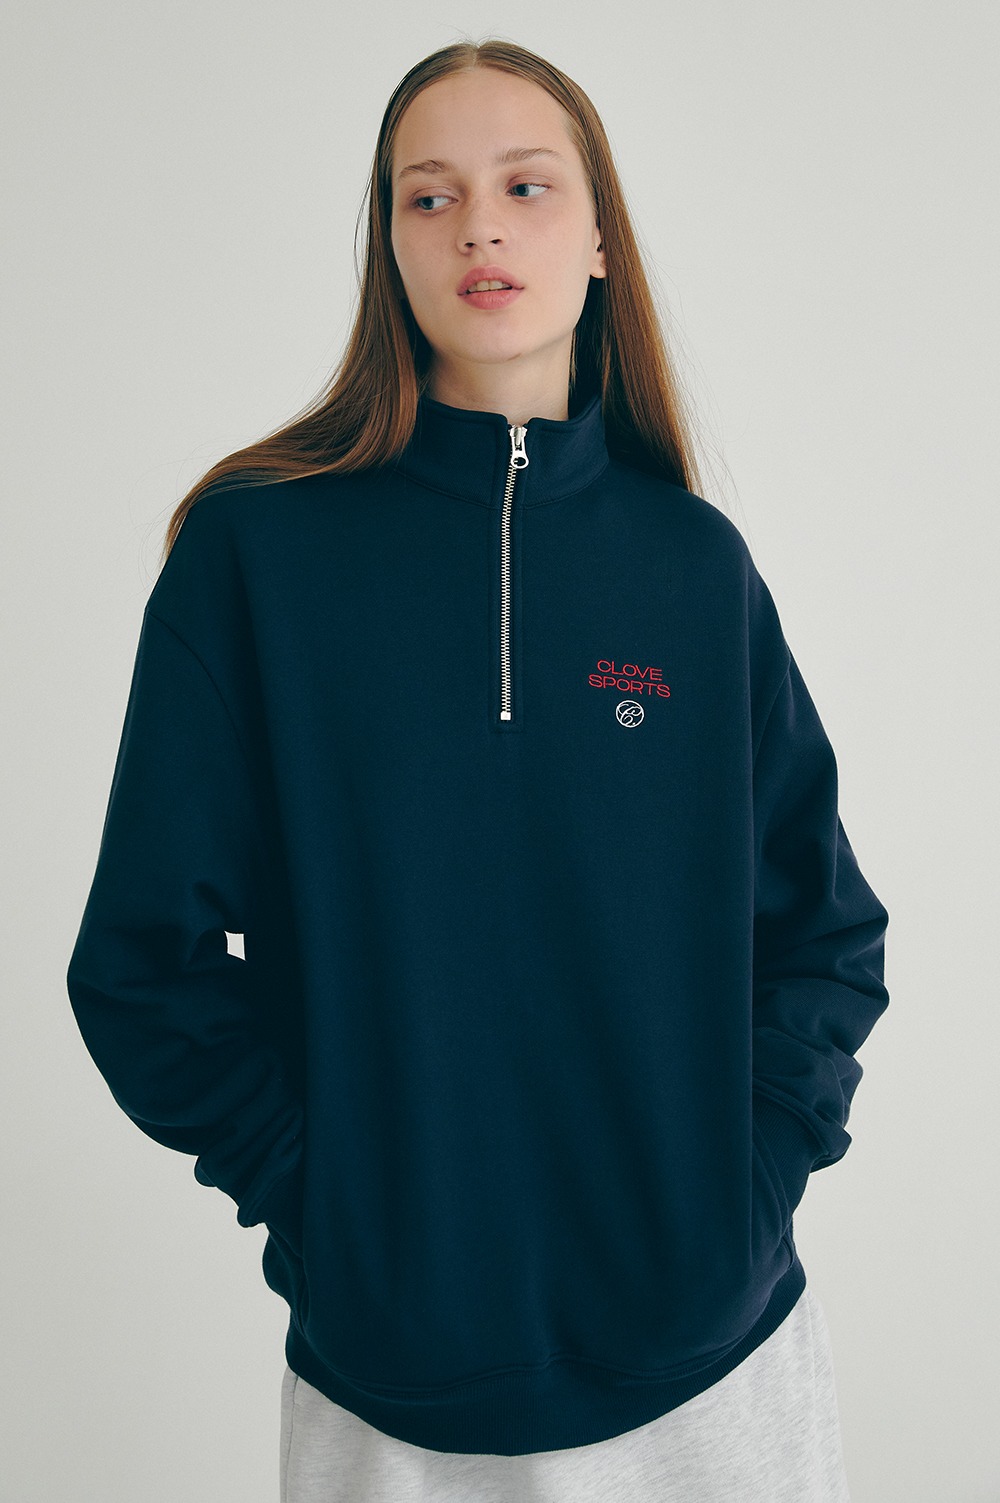 clove - [22FW clove] Sports Half-Zip Sweatshirt (Dark Navy)